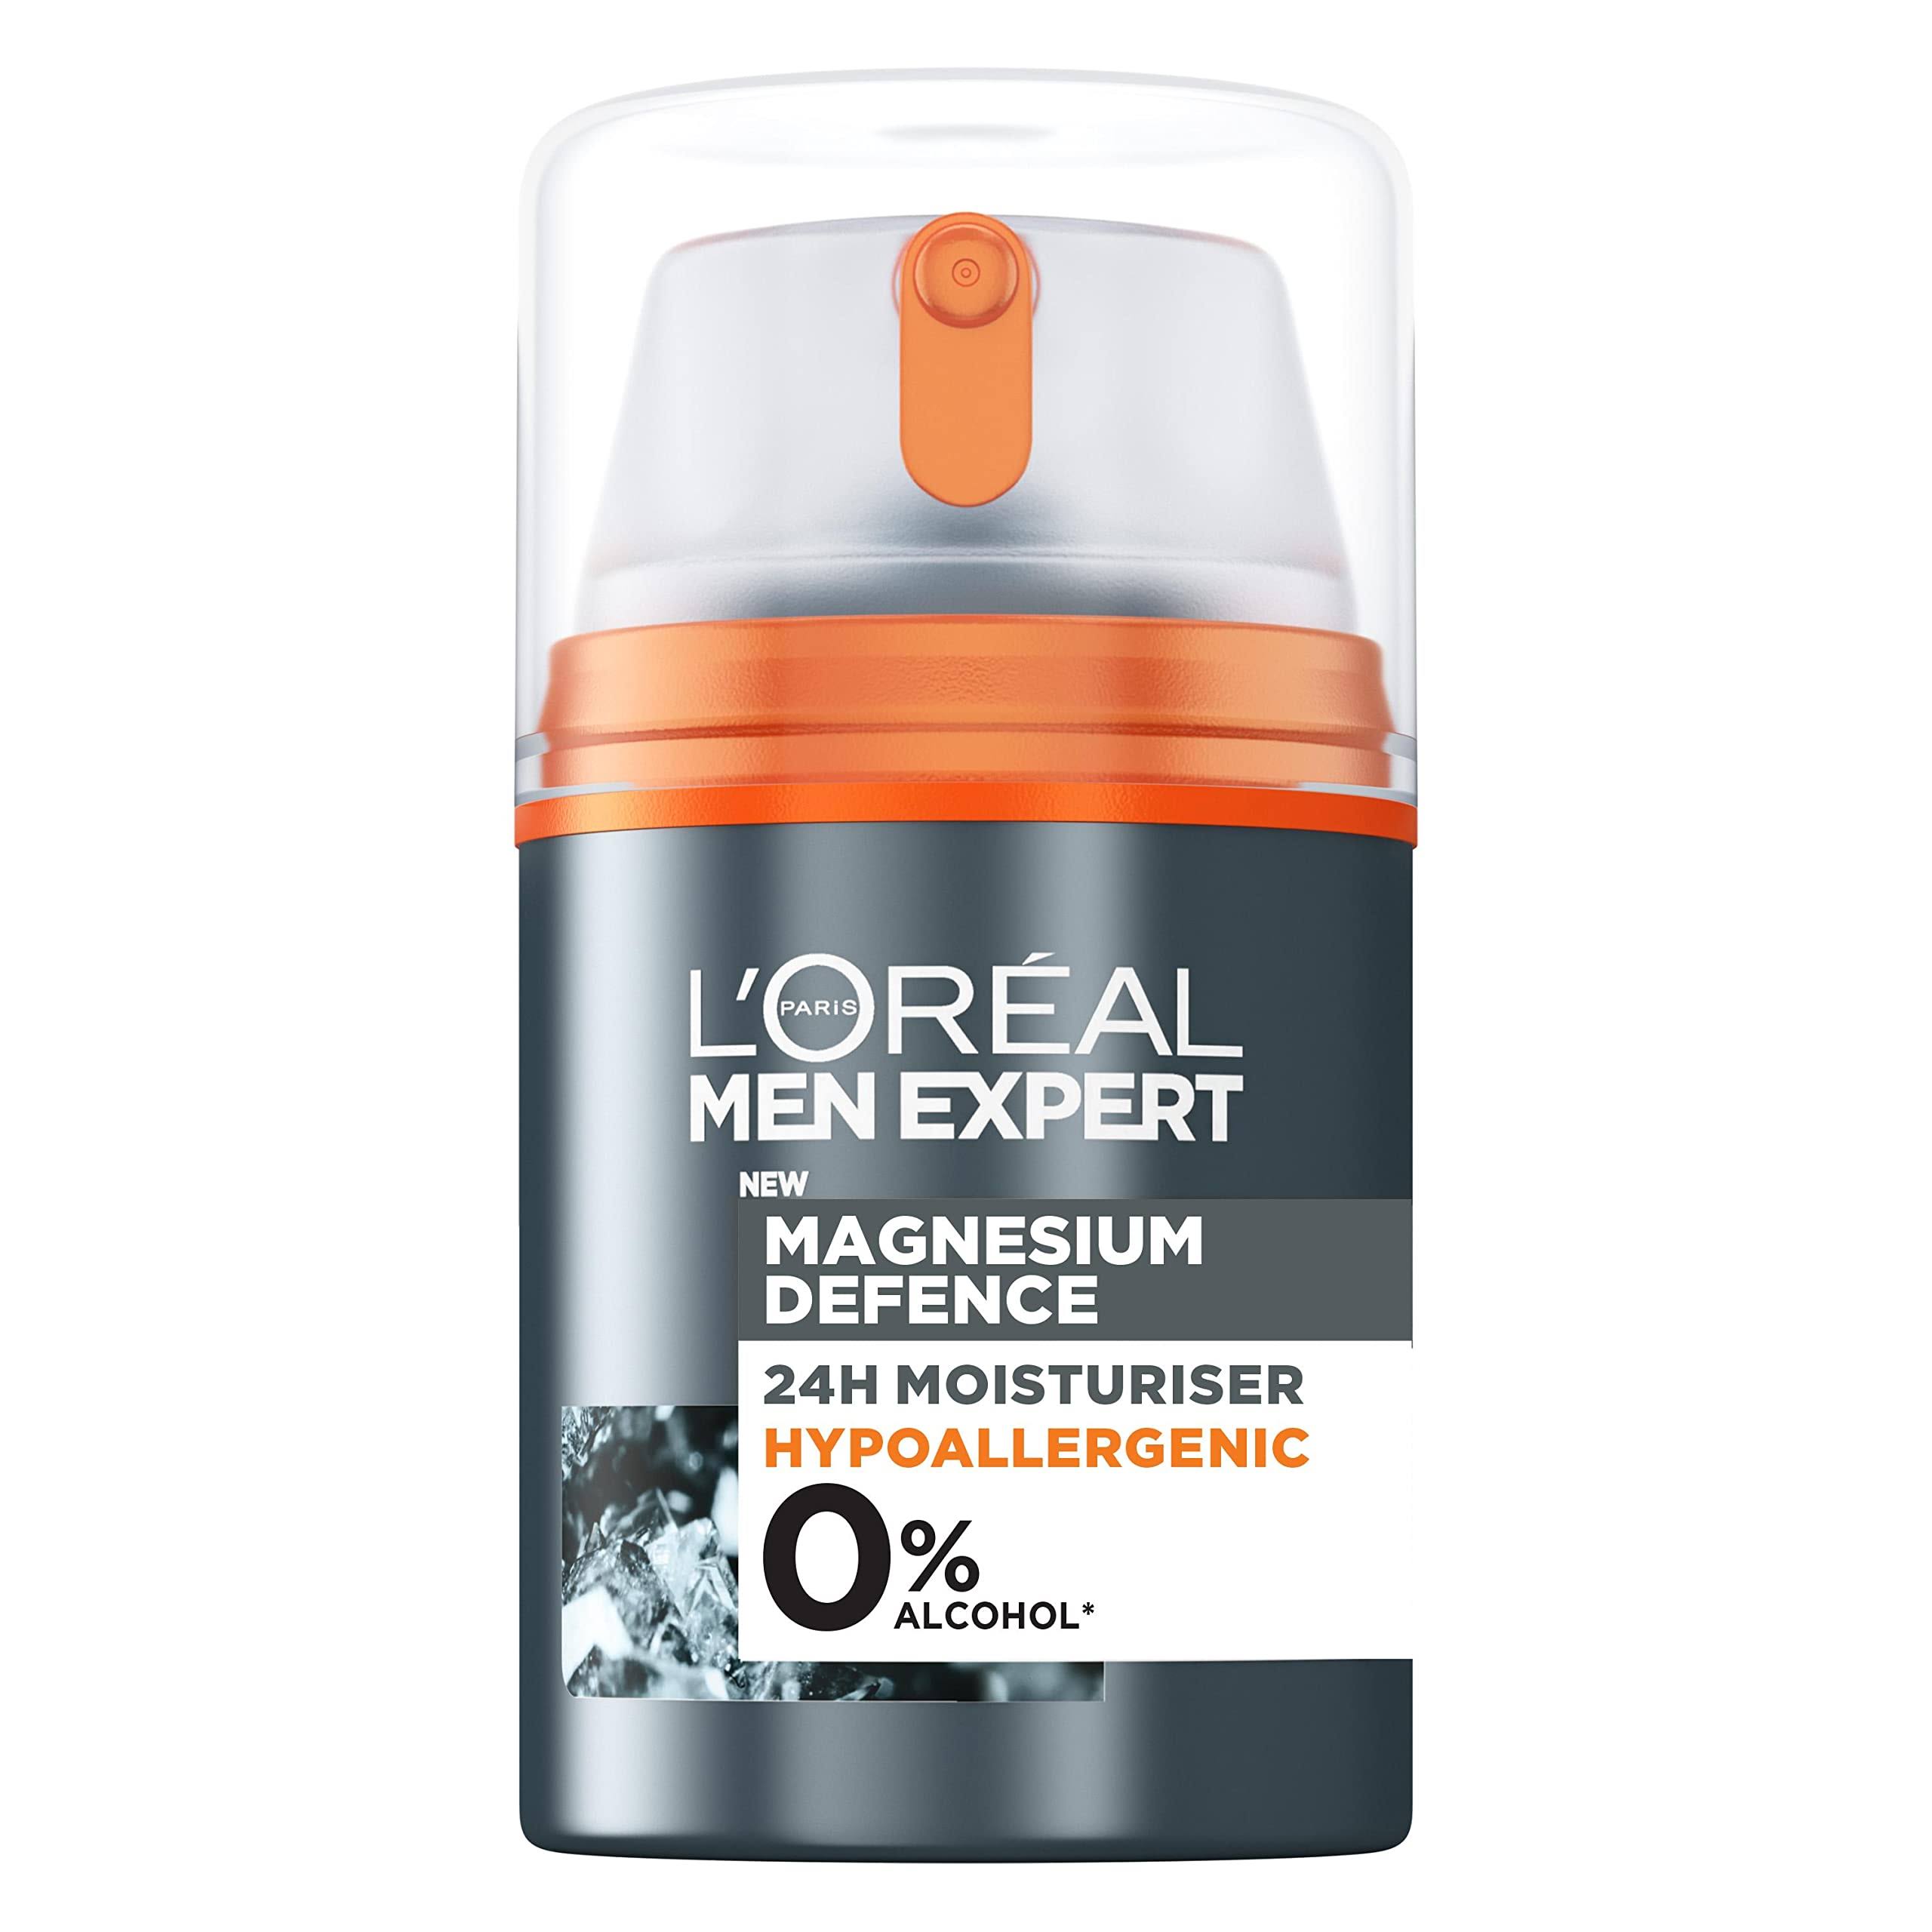 L'Oreal Men Expert Magnesium Defence 24H Moisturiser Hypoallergenic 50ml